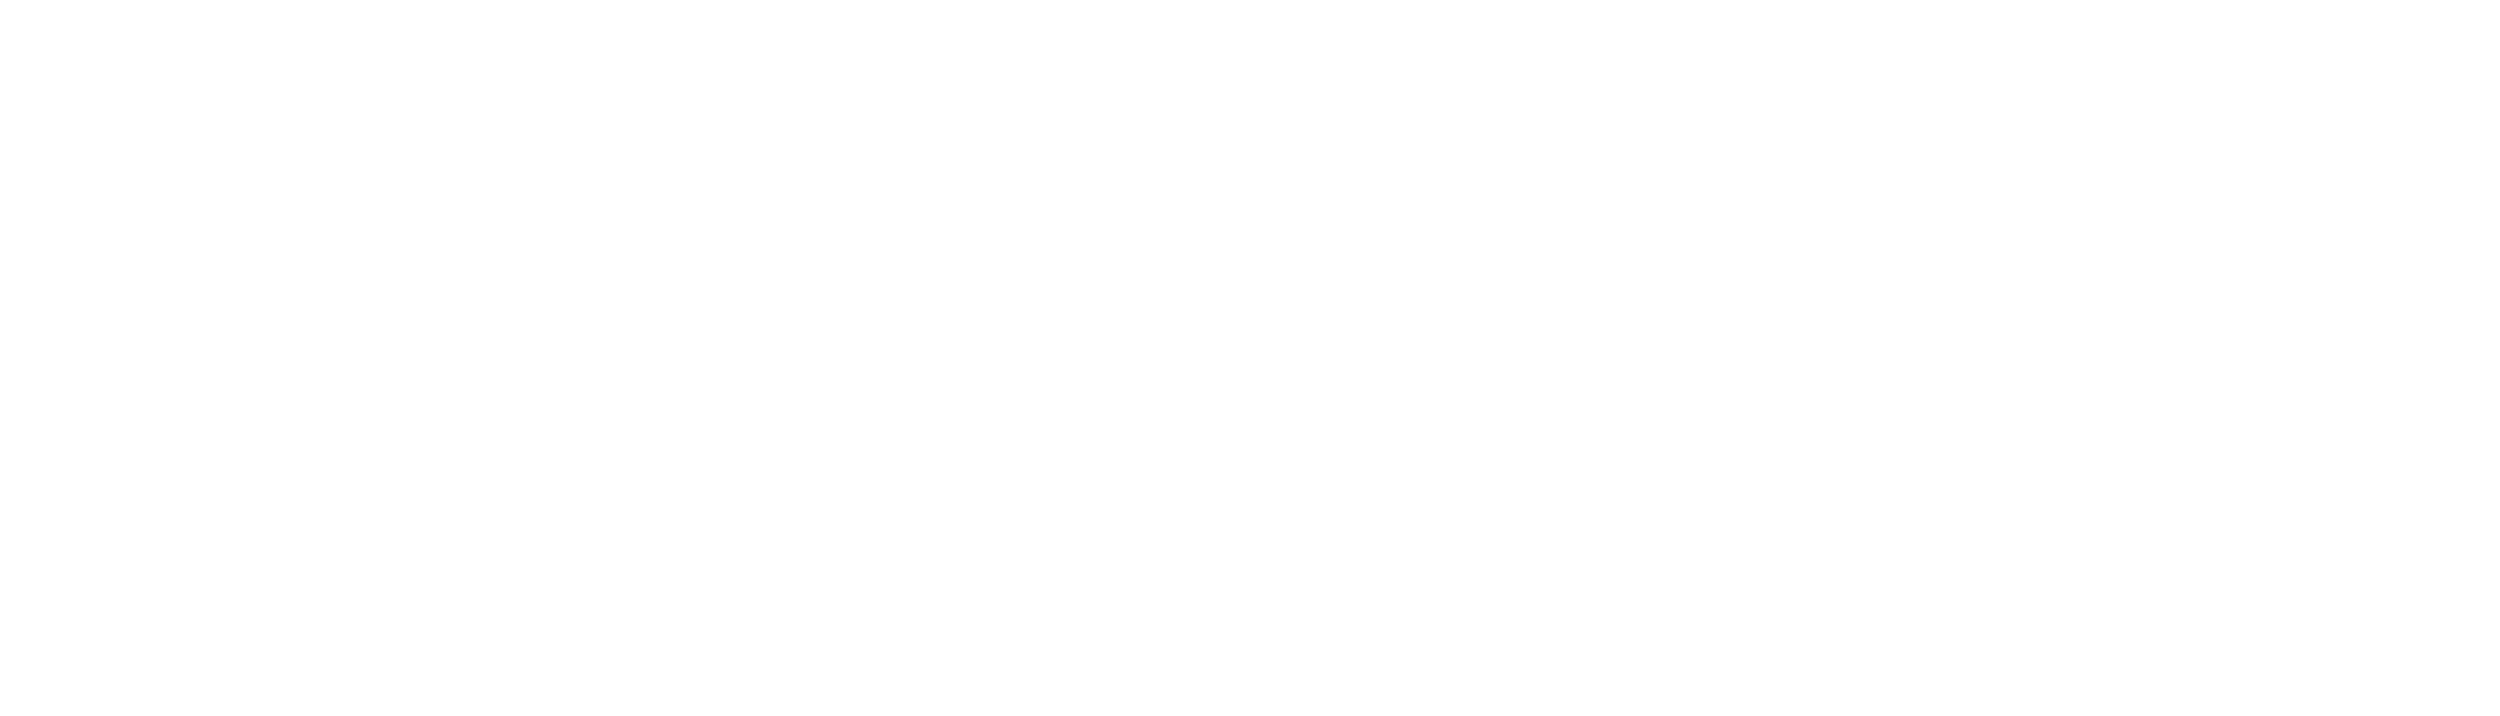 Abbey Glen - Gateway  - WHITE.png